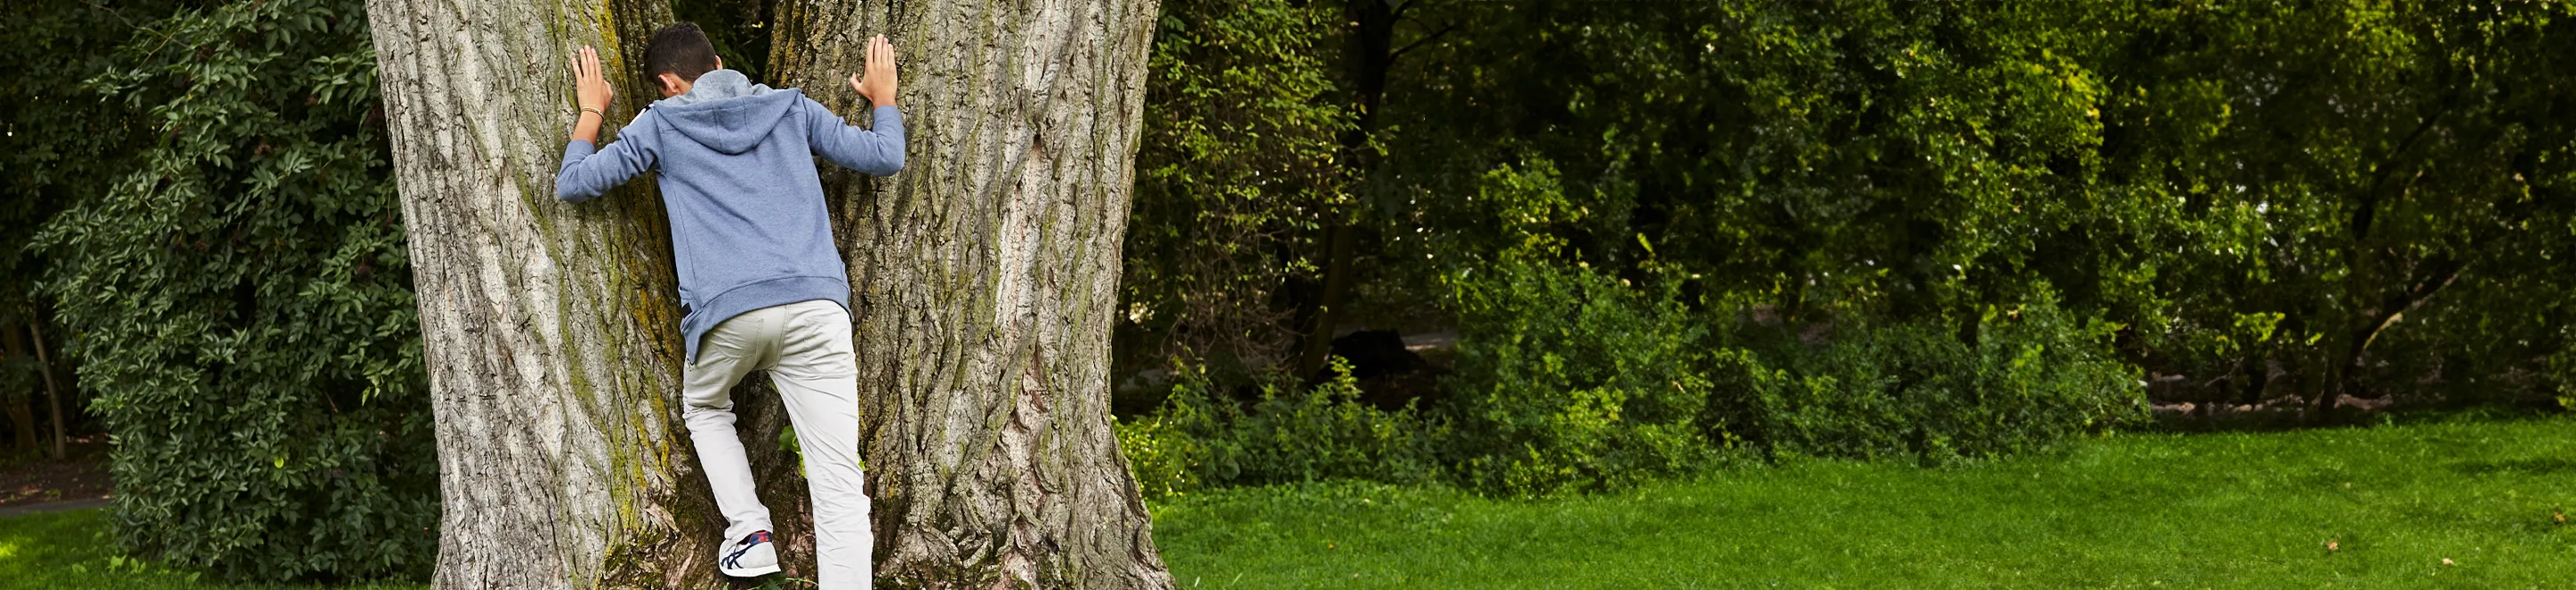 Ein junger Mann steht mit dem Gesicht vor einem dicken Baum, dessen Stamm sich gabelt.